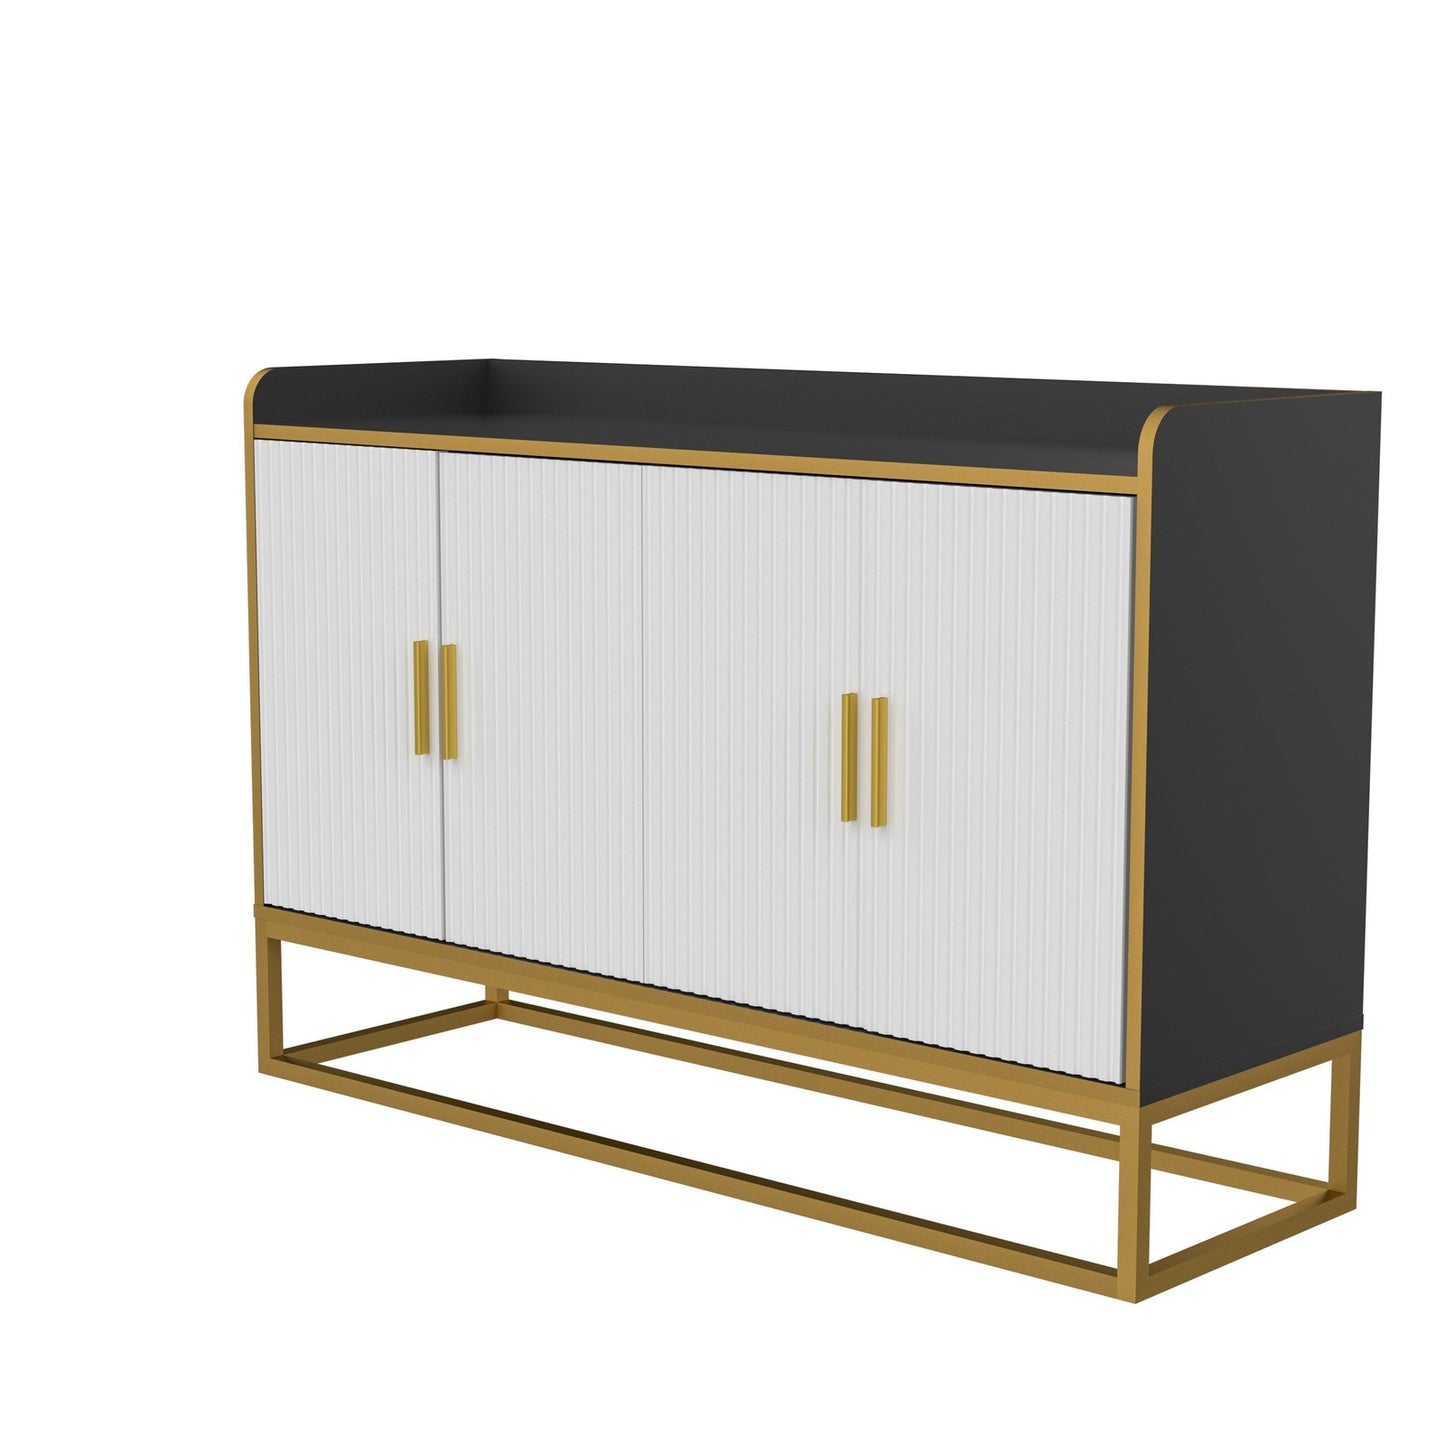 Justone Interior Modern Storage Cabinet - Black & Gold